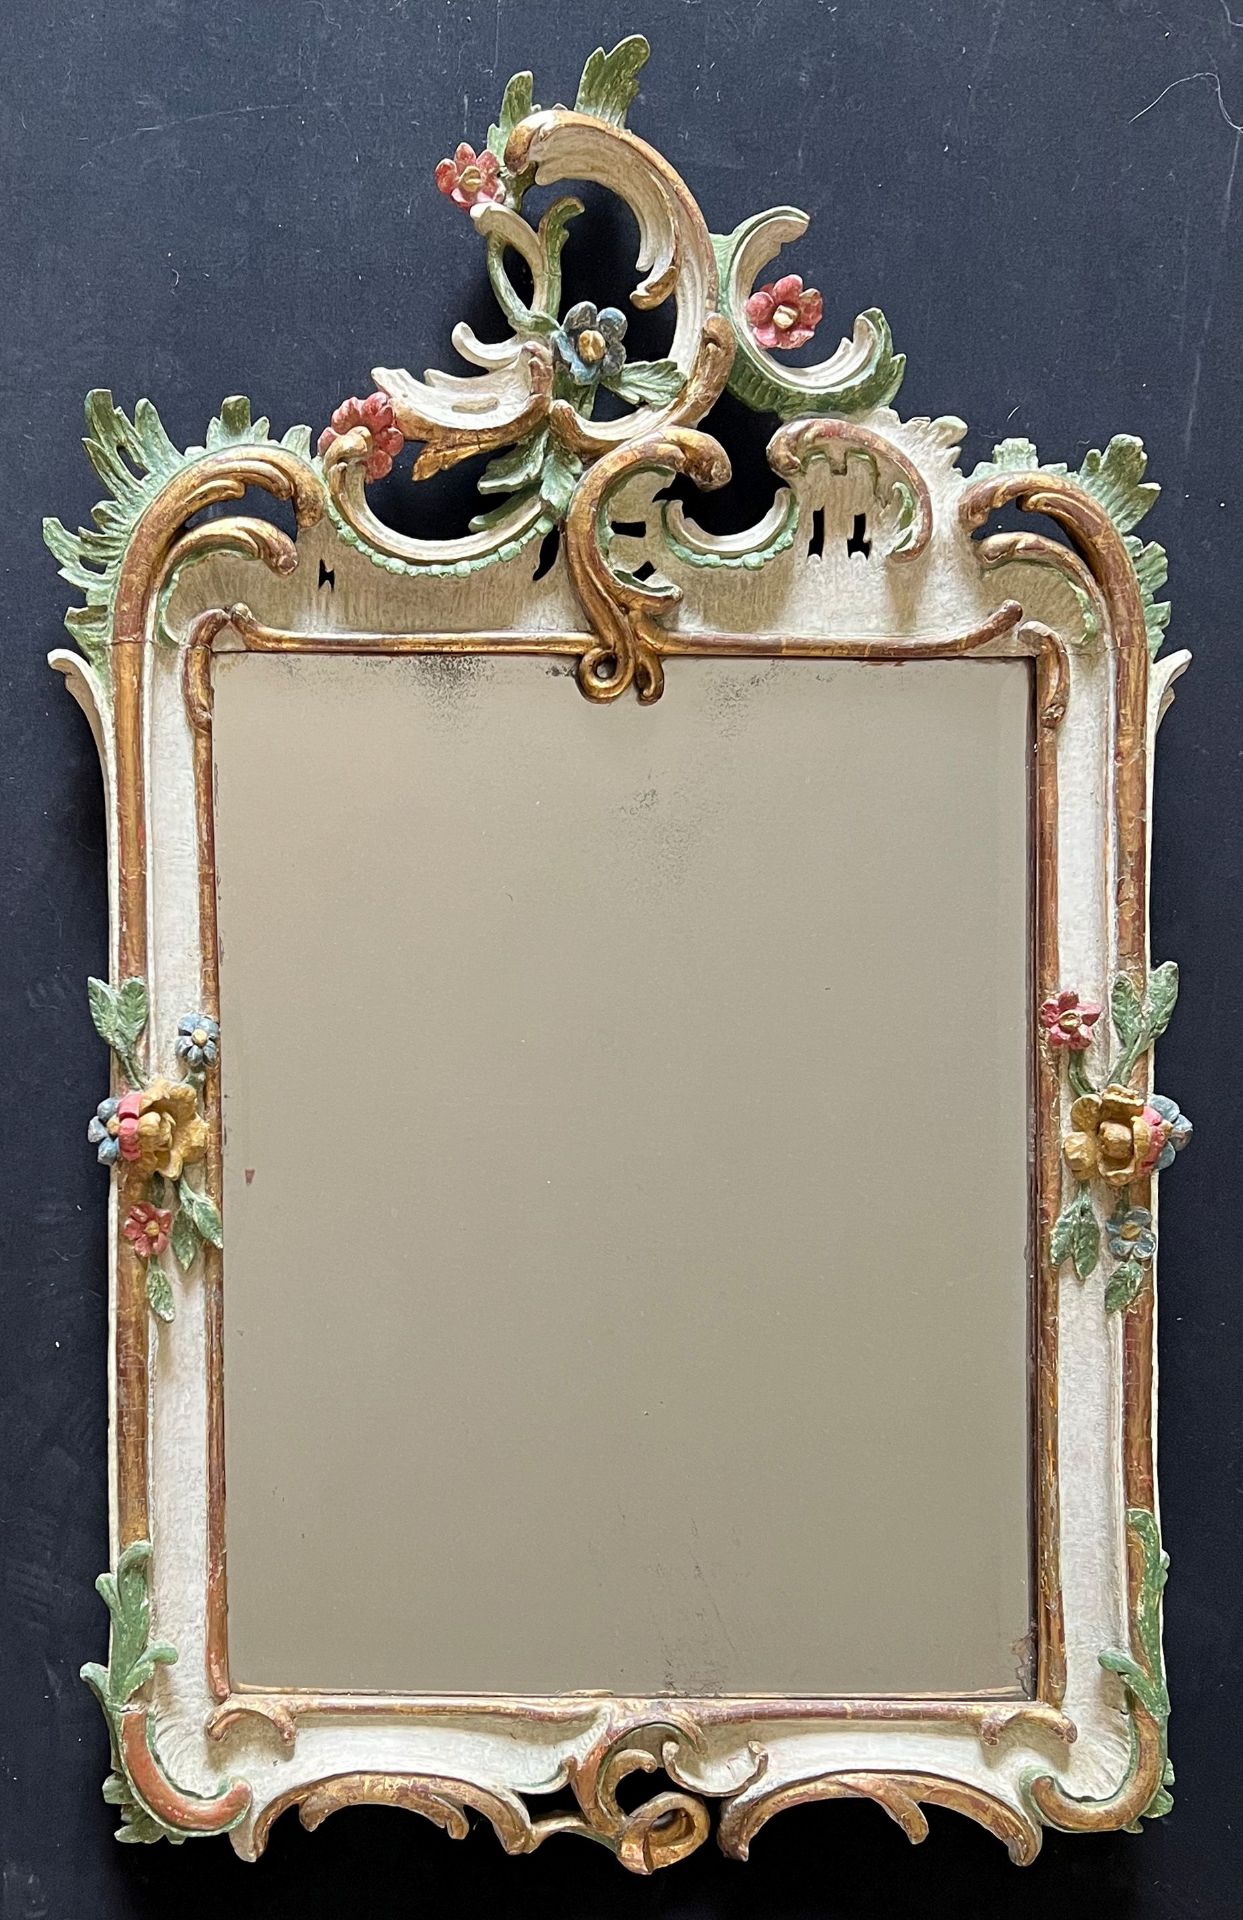 Spiegel mit Rankenornamentik, Blättern und Blüten, Holz, farbig gefasst, facettiertes Glas,